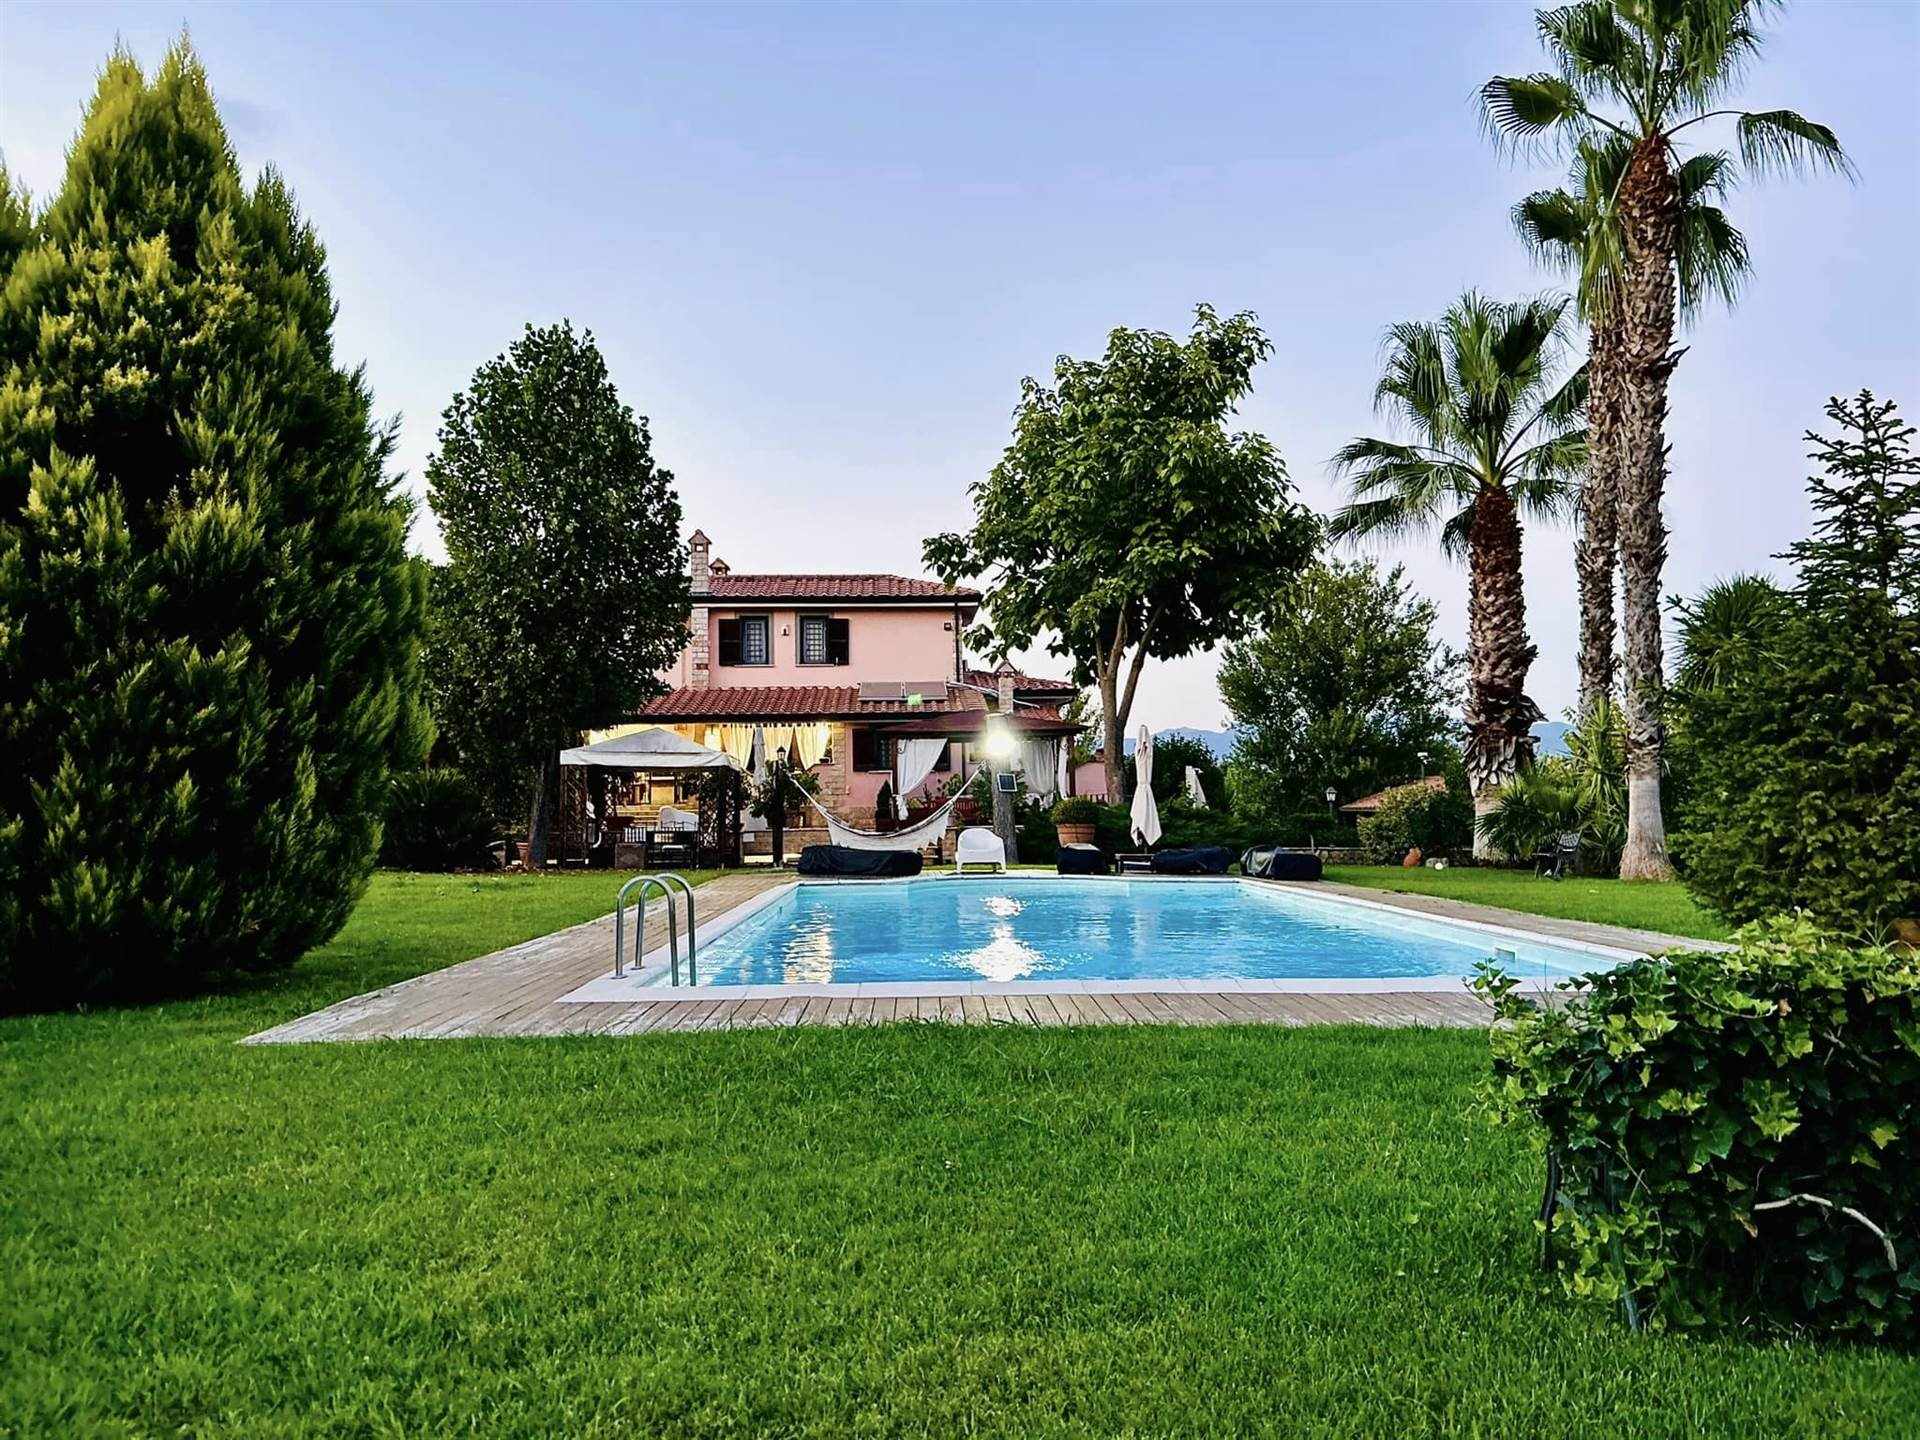 Villa Bifamiliare in vendita a Fiano Romano, 7 locali, prezzo € 690.000 | PortaleAgenzieImmobiliari.it